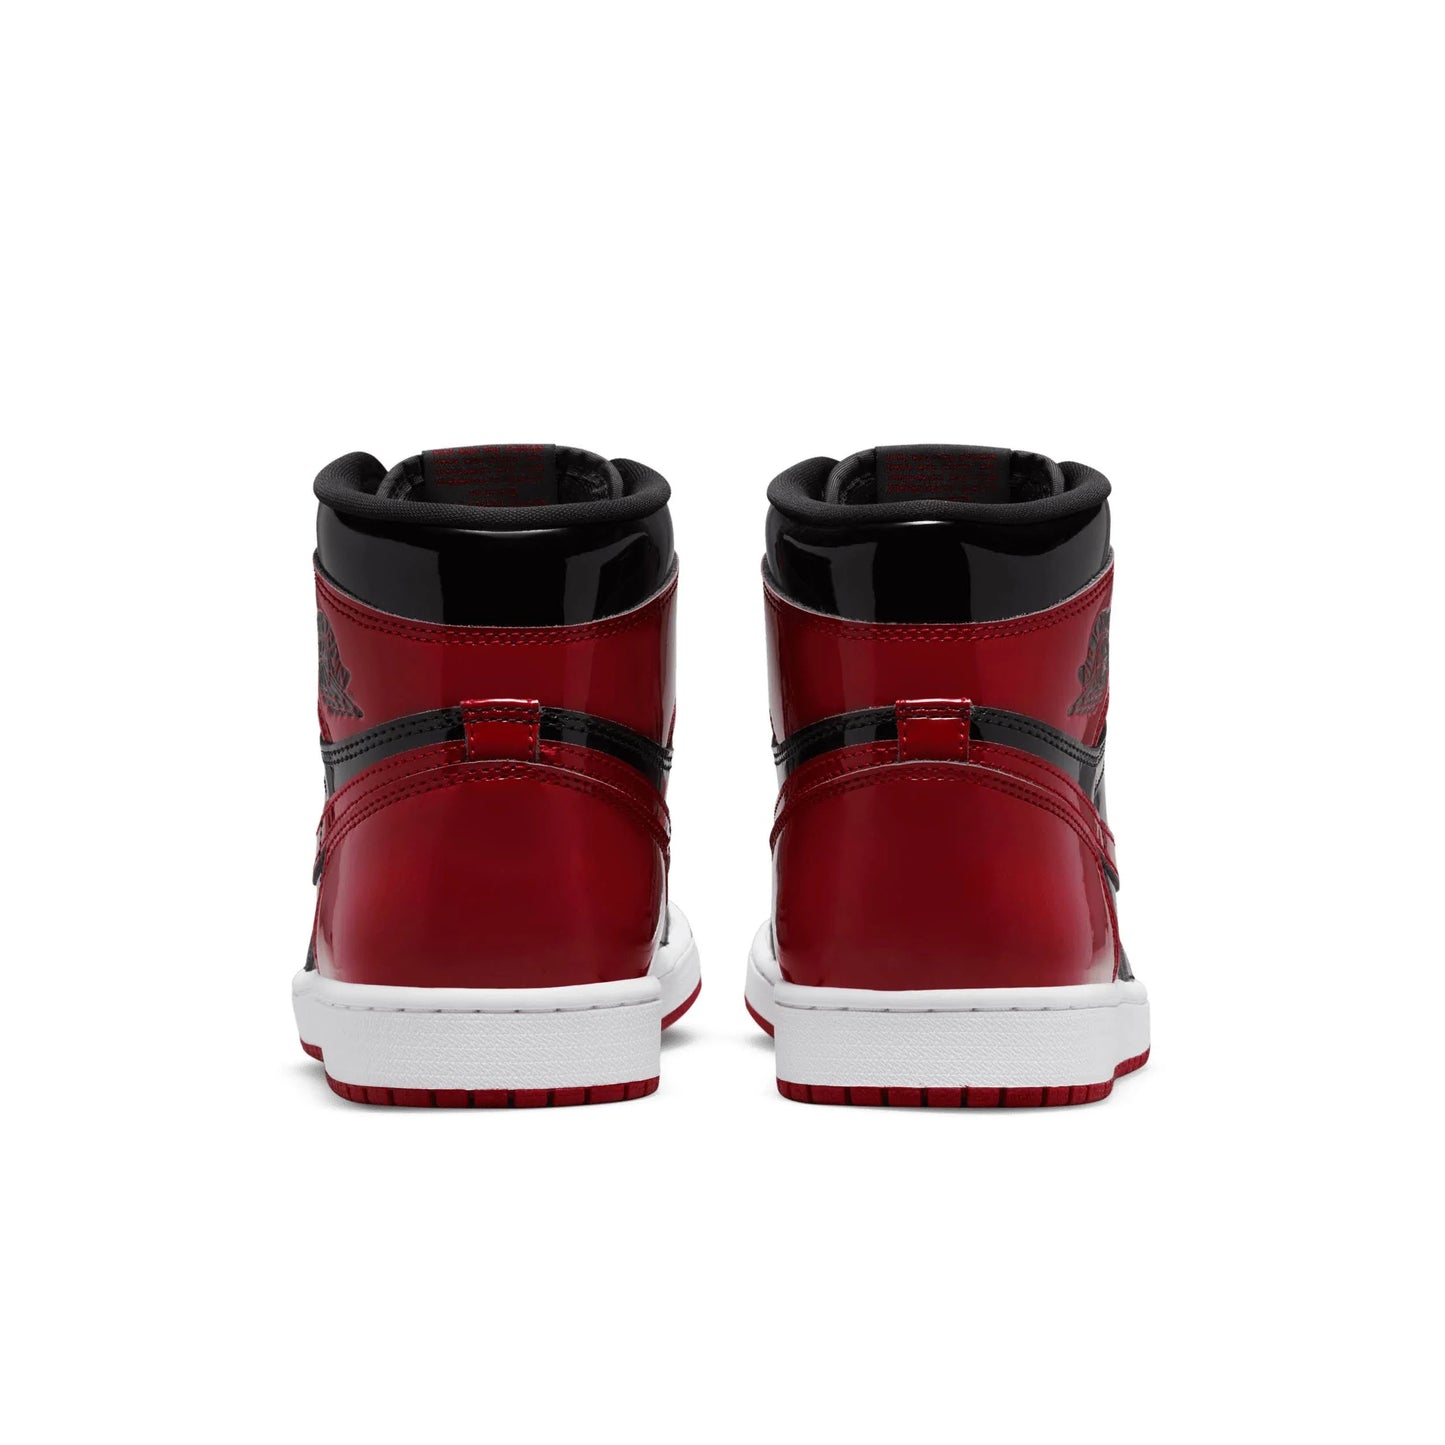 Air Jordan 1 High “Patent Bred” Sale